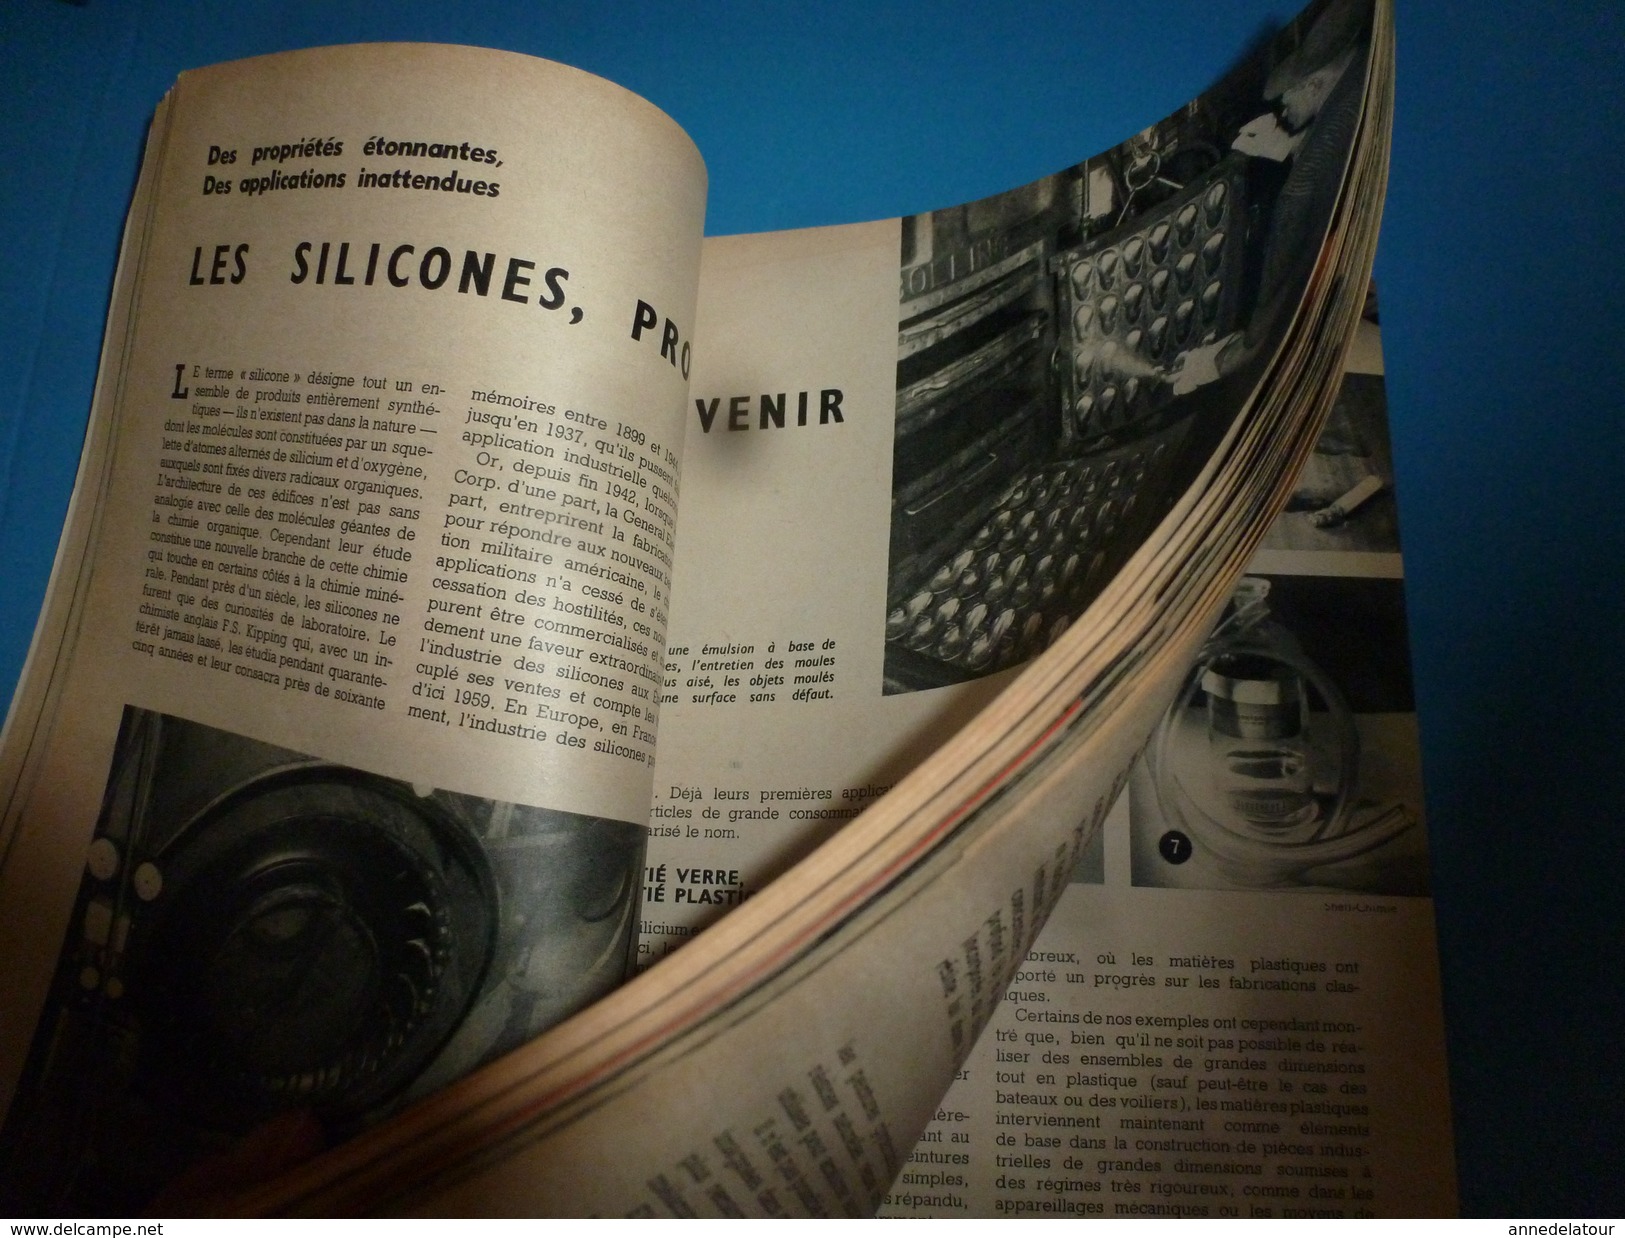 1954 SCIENCE Et VIE N° HORS-SERIE  Sur L'extrordinaire Avenir De MATIERES PLASTIQUES - Science